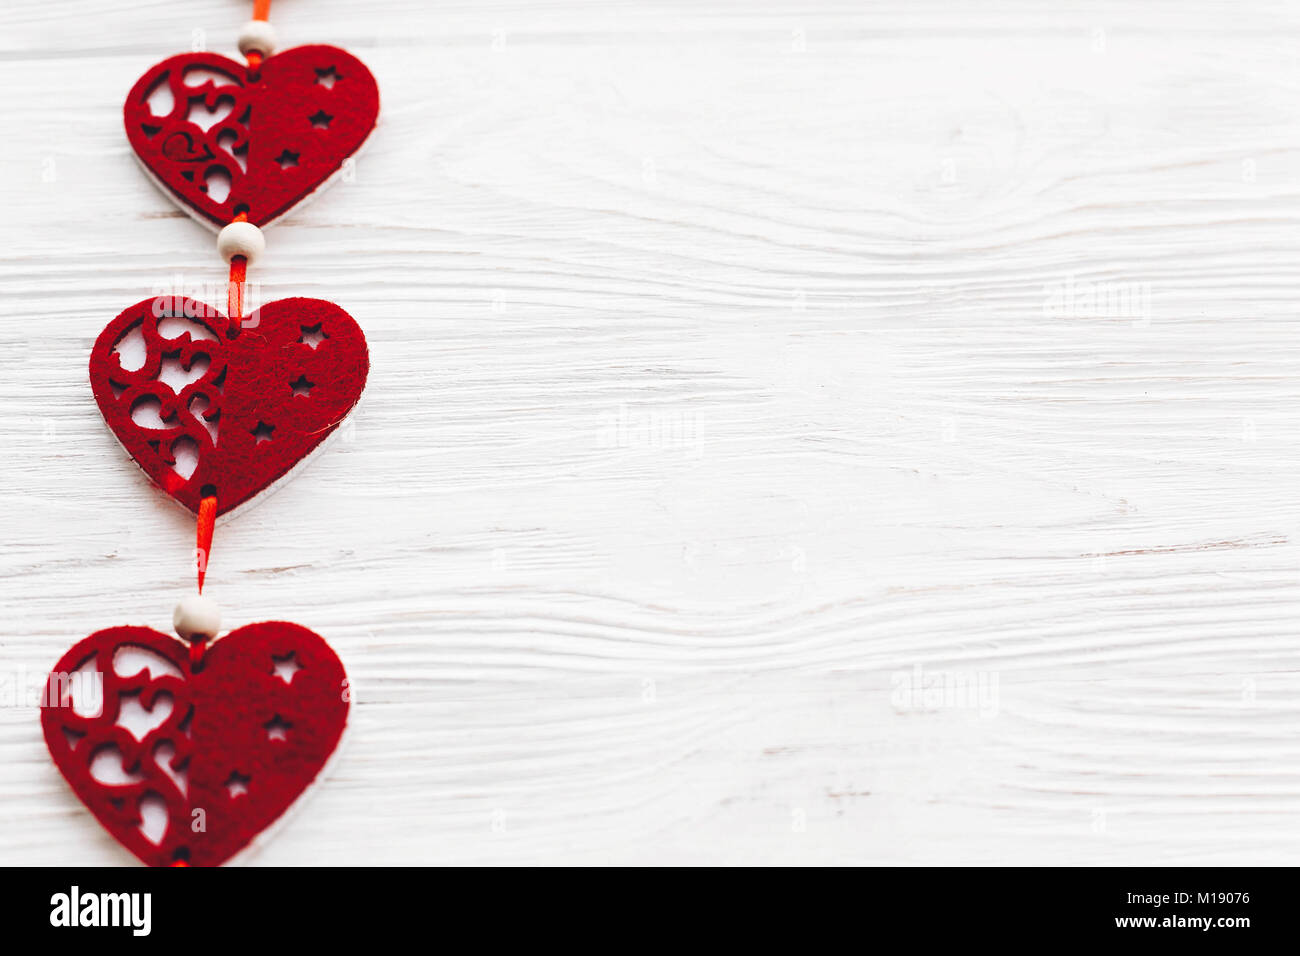 San Valentín: la búsqueda de la felicidad – mitin